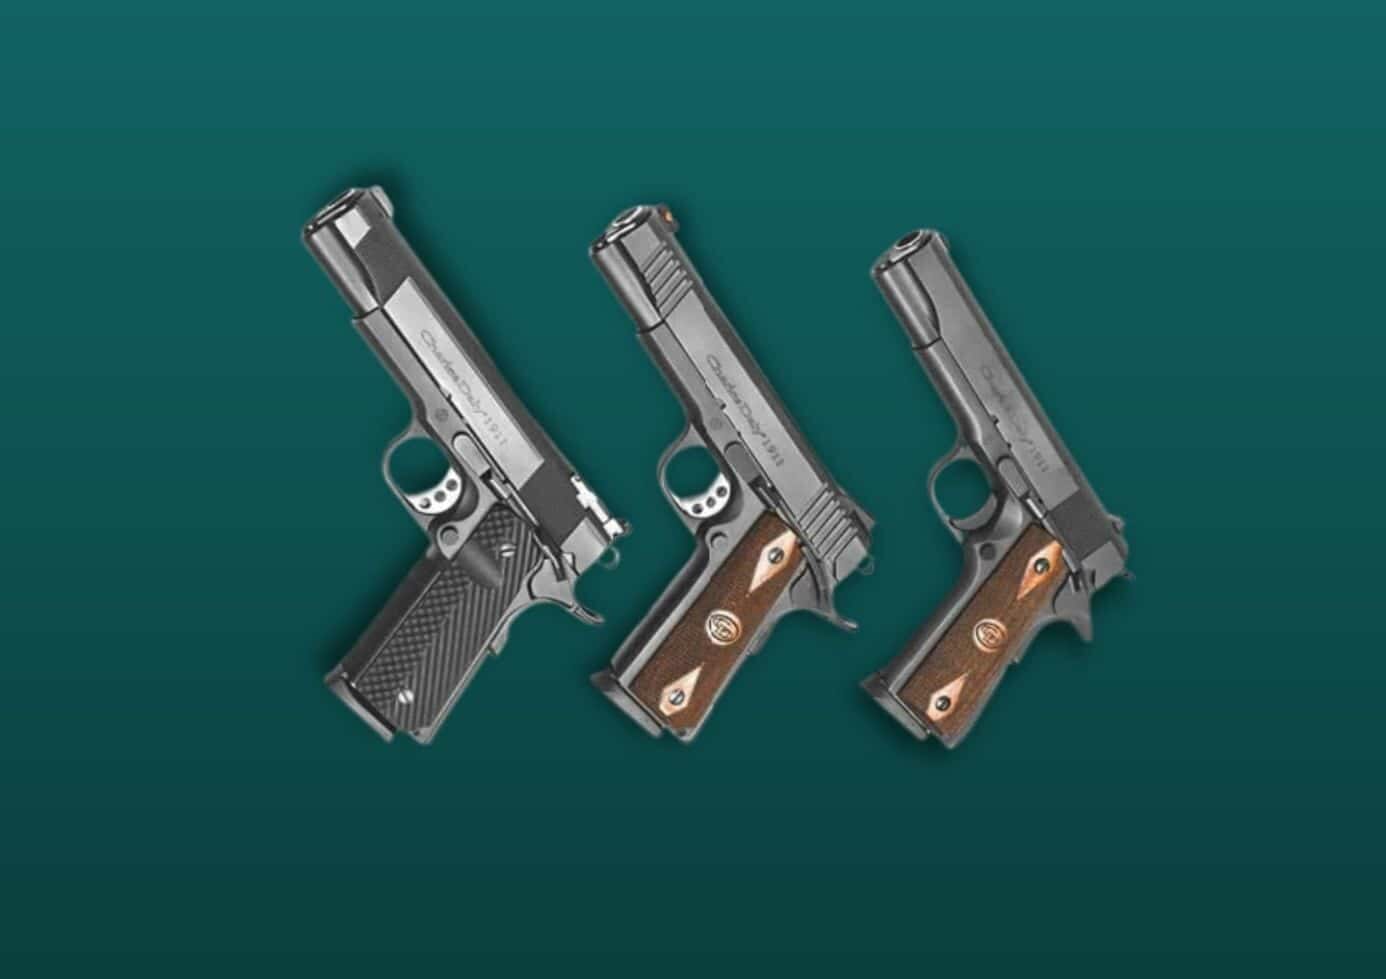 Charles Daly 1911 handguns